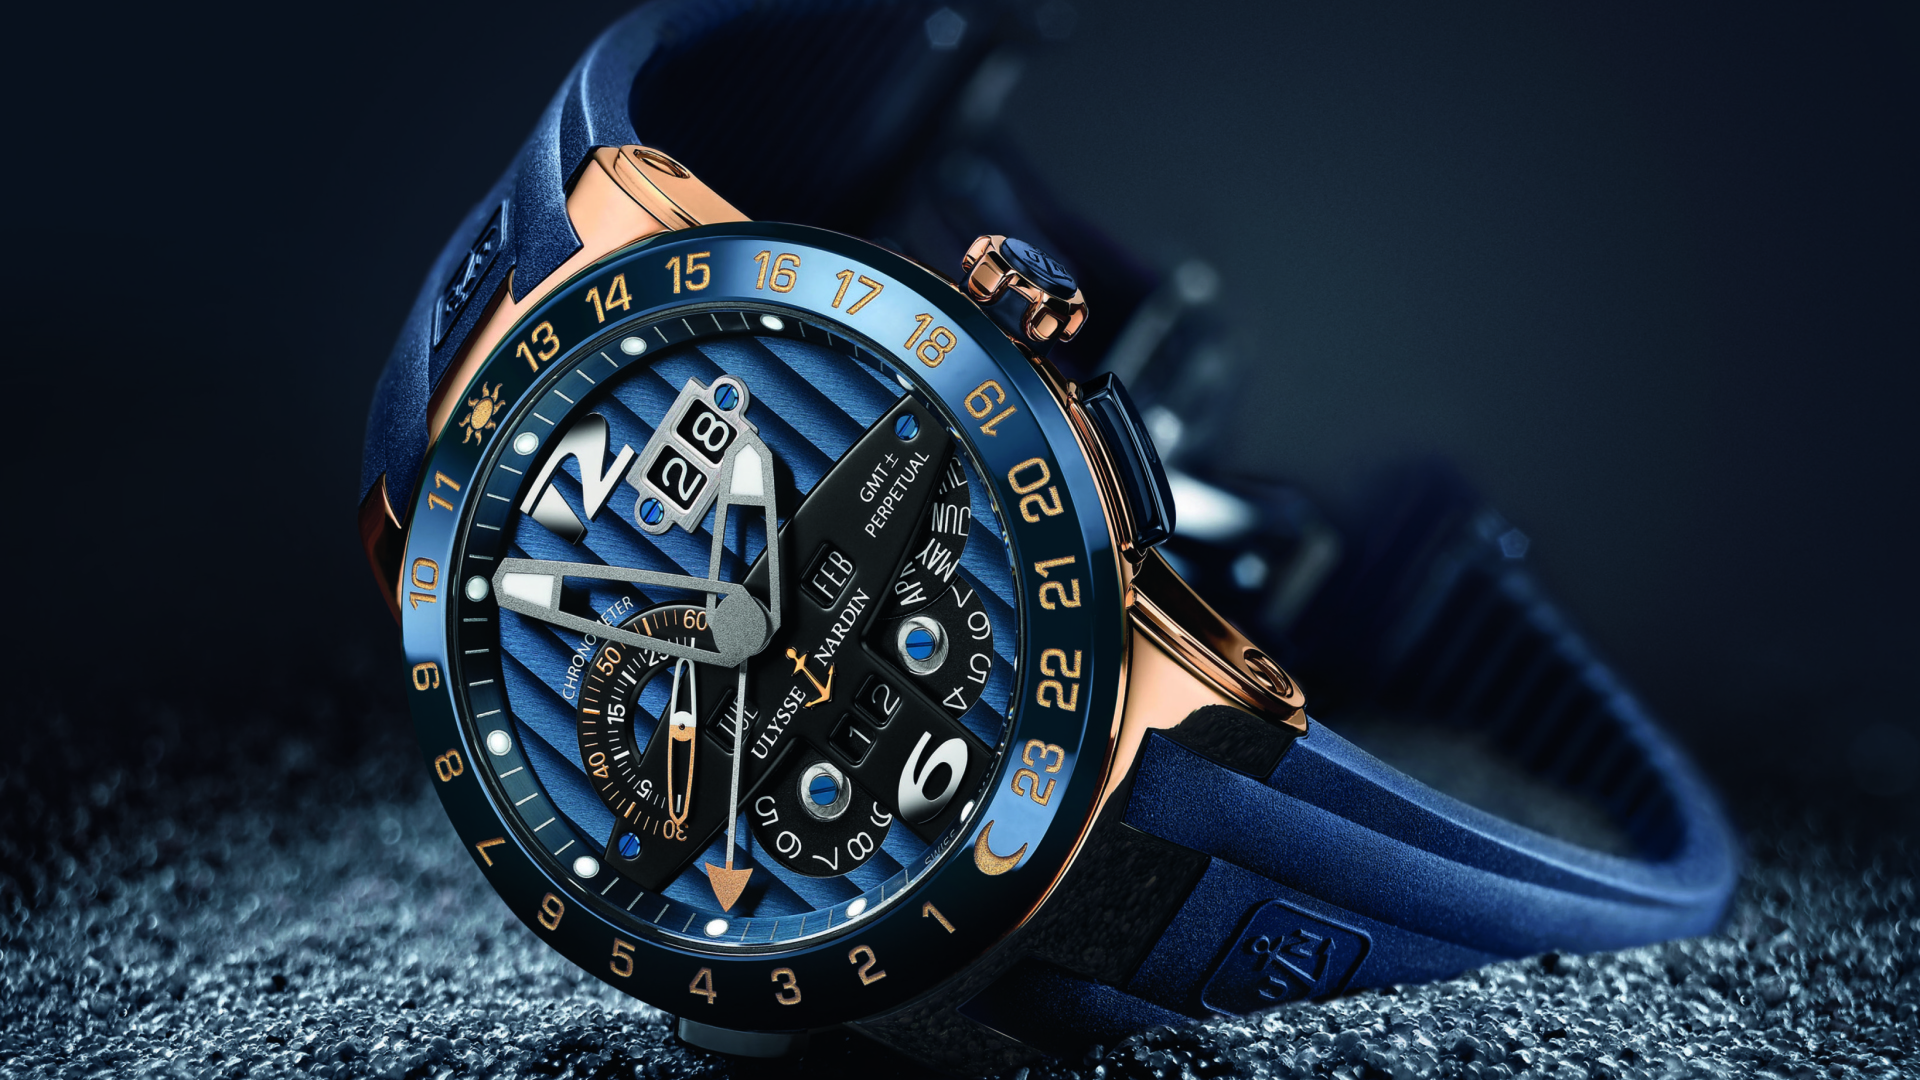 Fondo de pantalla Ulysse Nardin - Luxury Watch 1920x1080